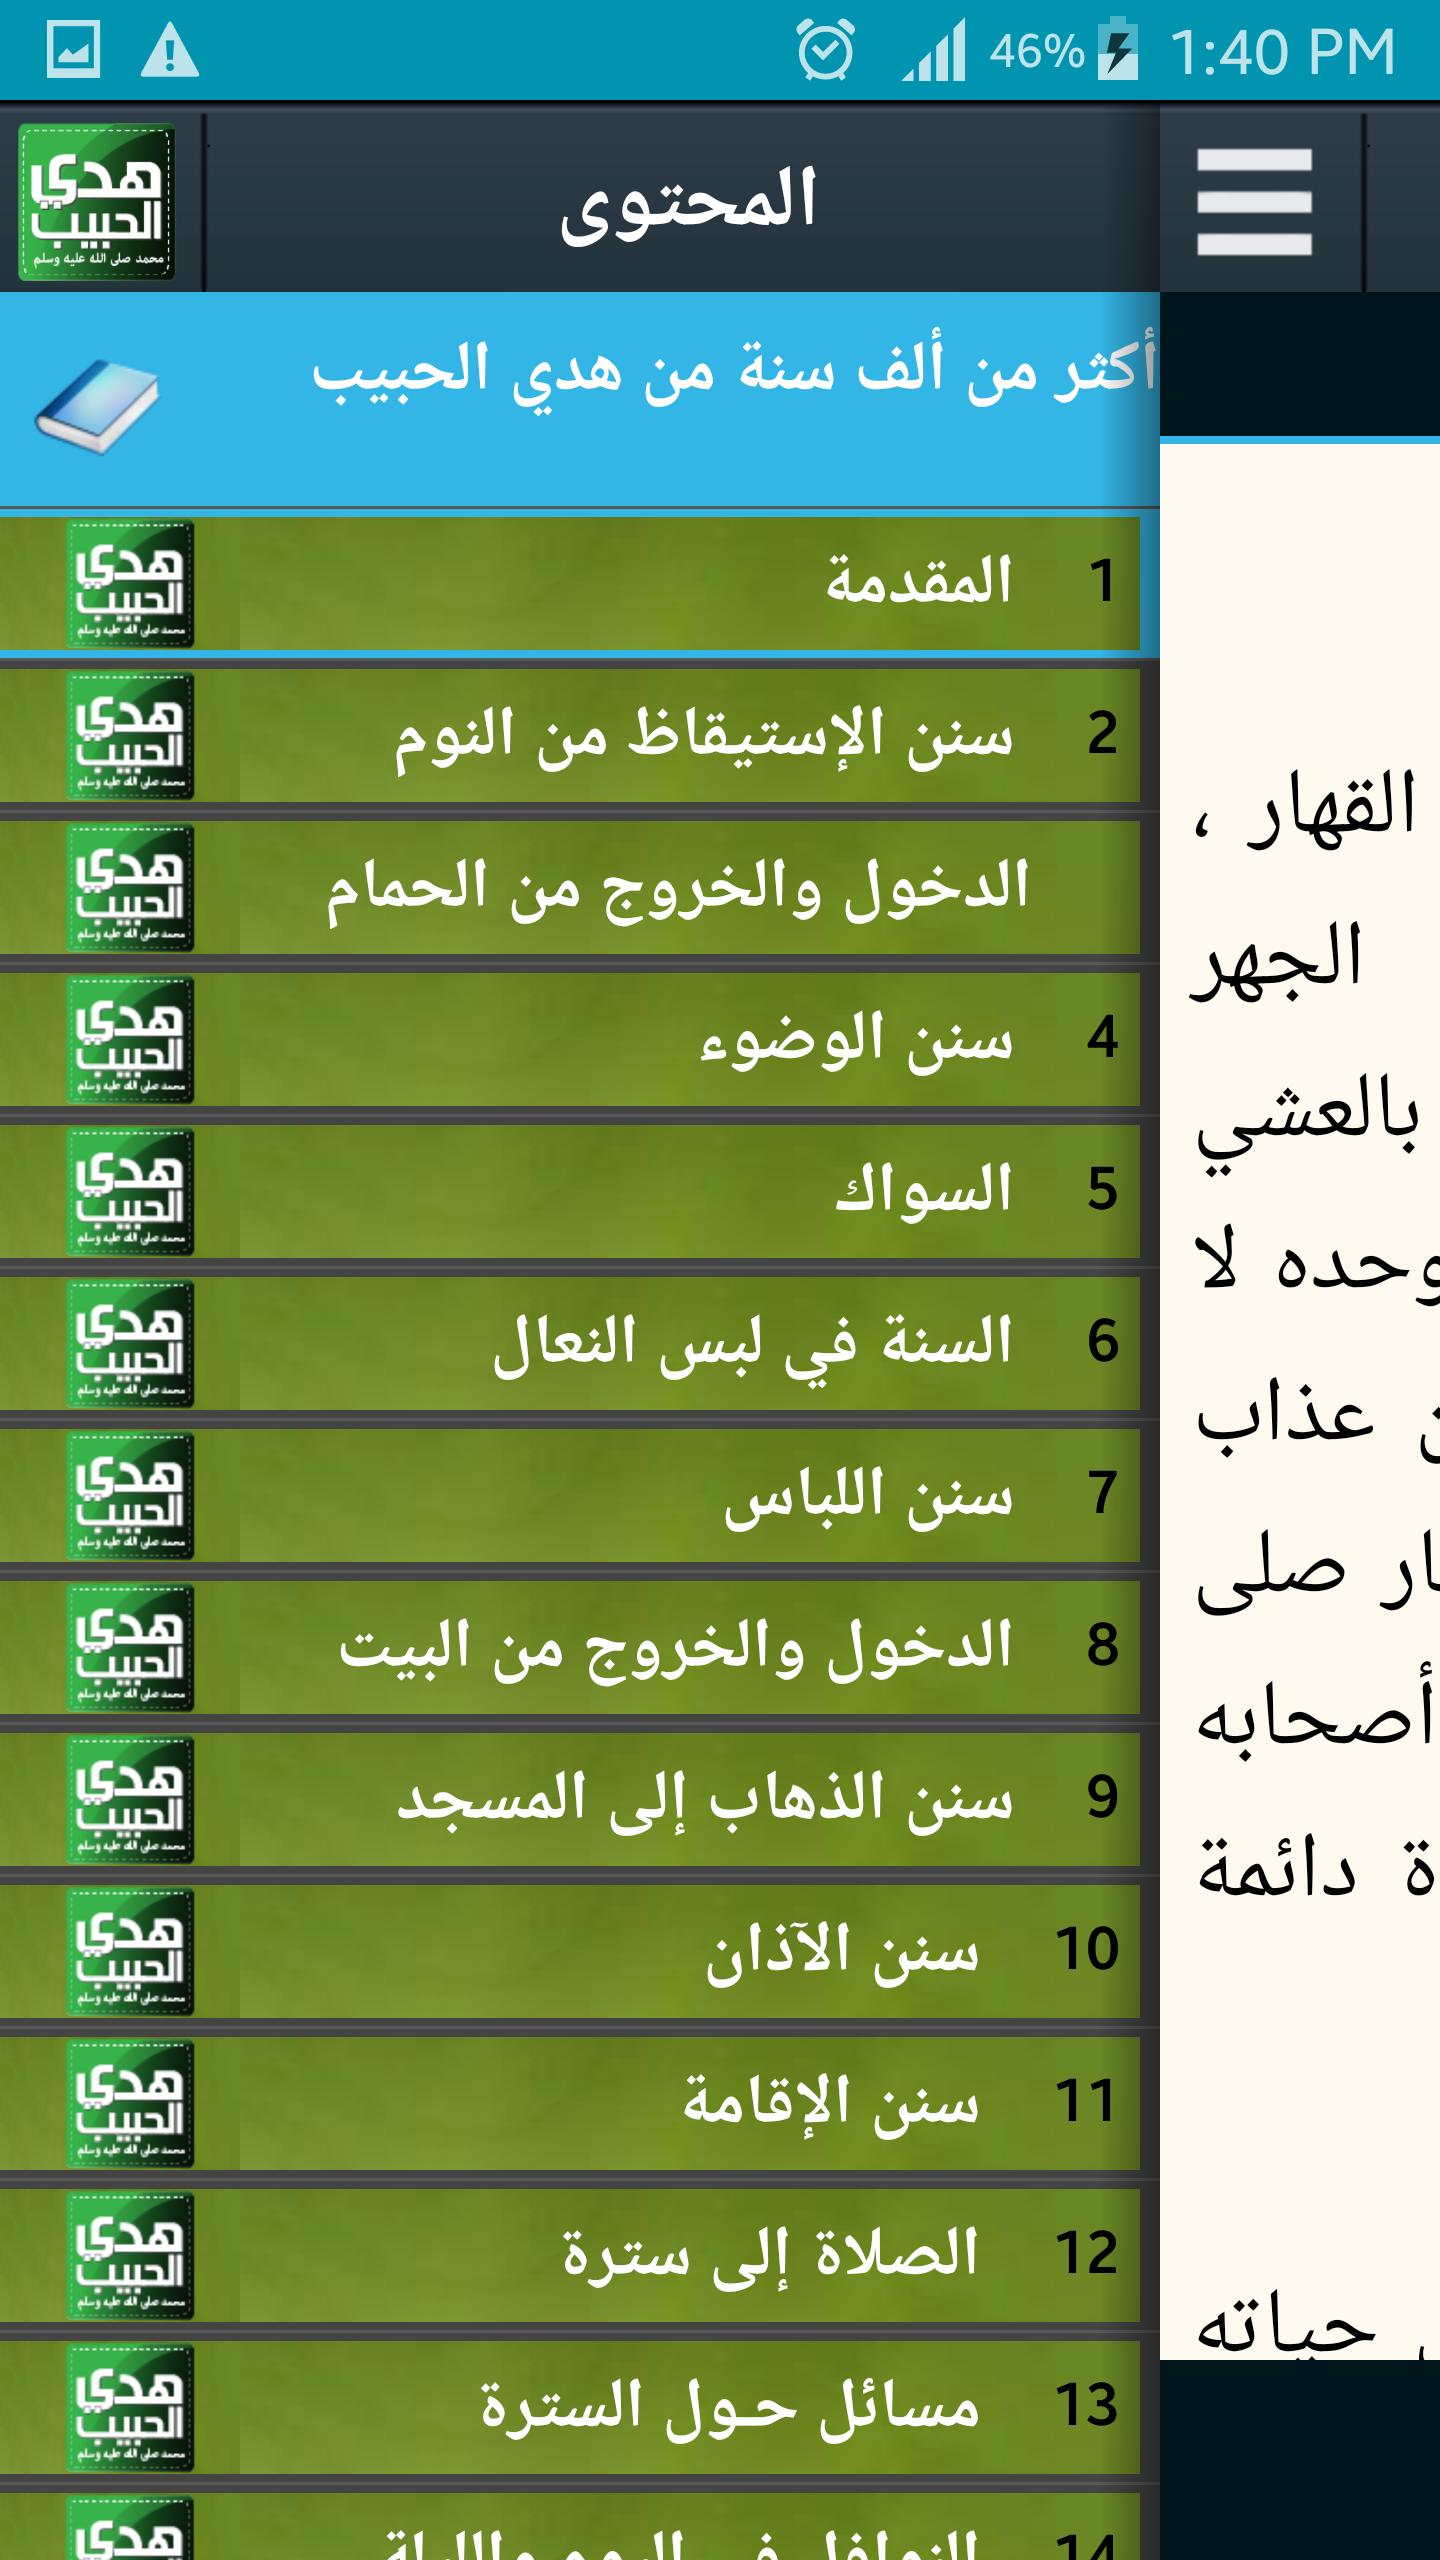 هدي الحبيب يا محب for Android - APK Download